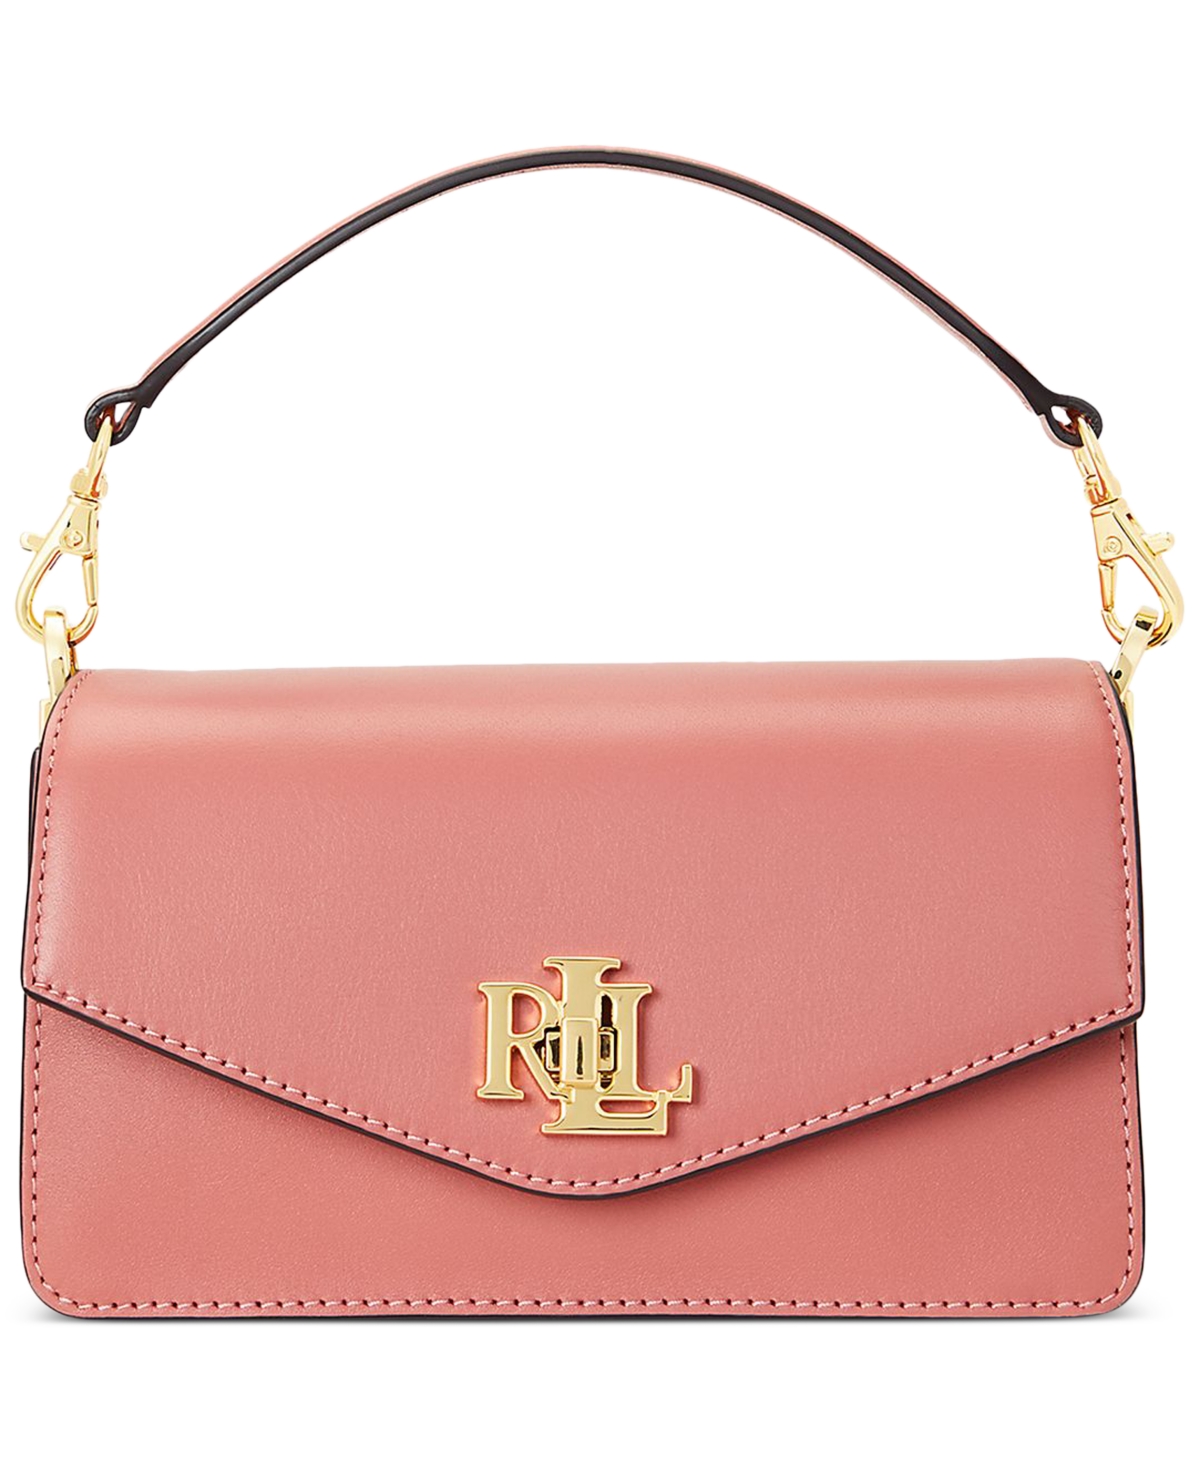 Lauren Ralph Lauren Small Leather Tayler Convertible Crossbody Bag In Pink Mahogany